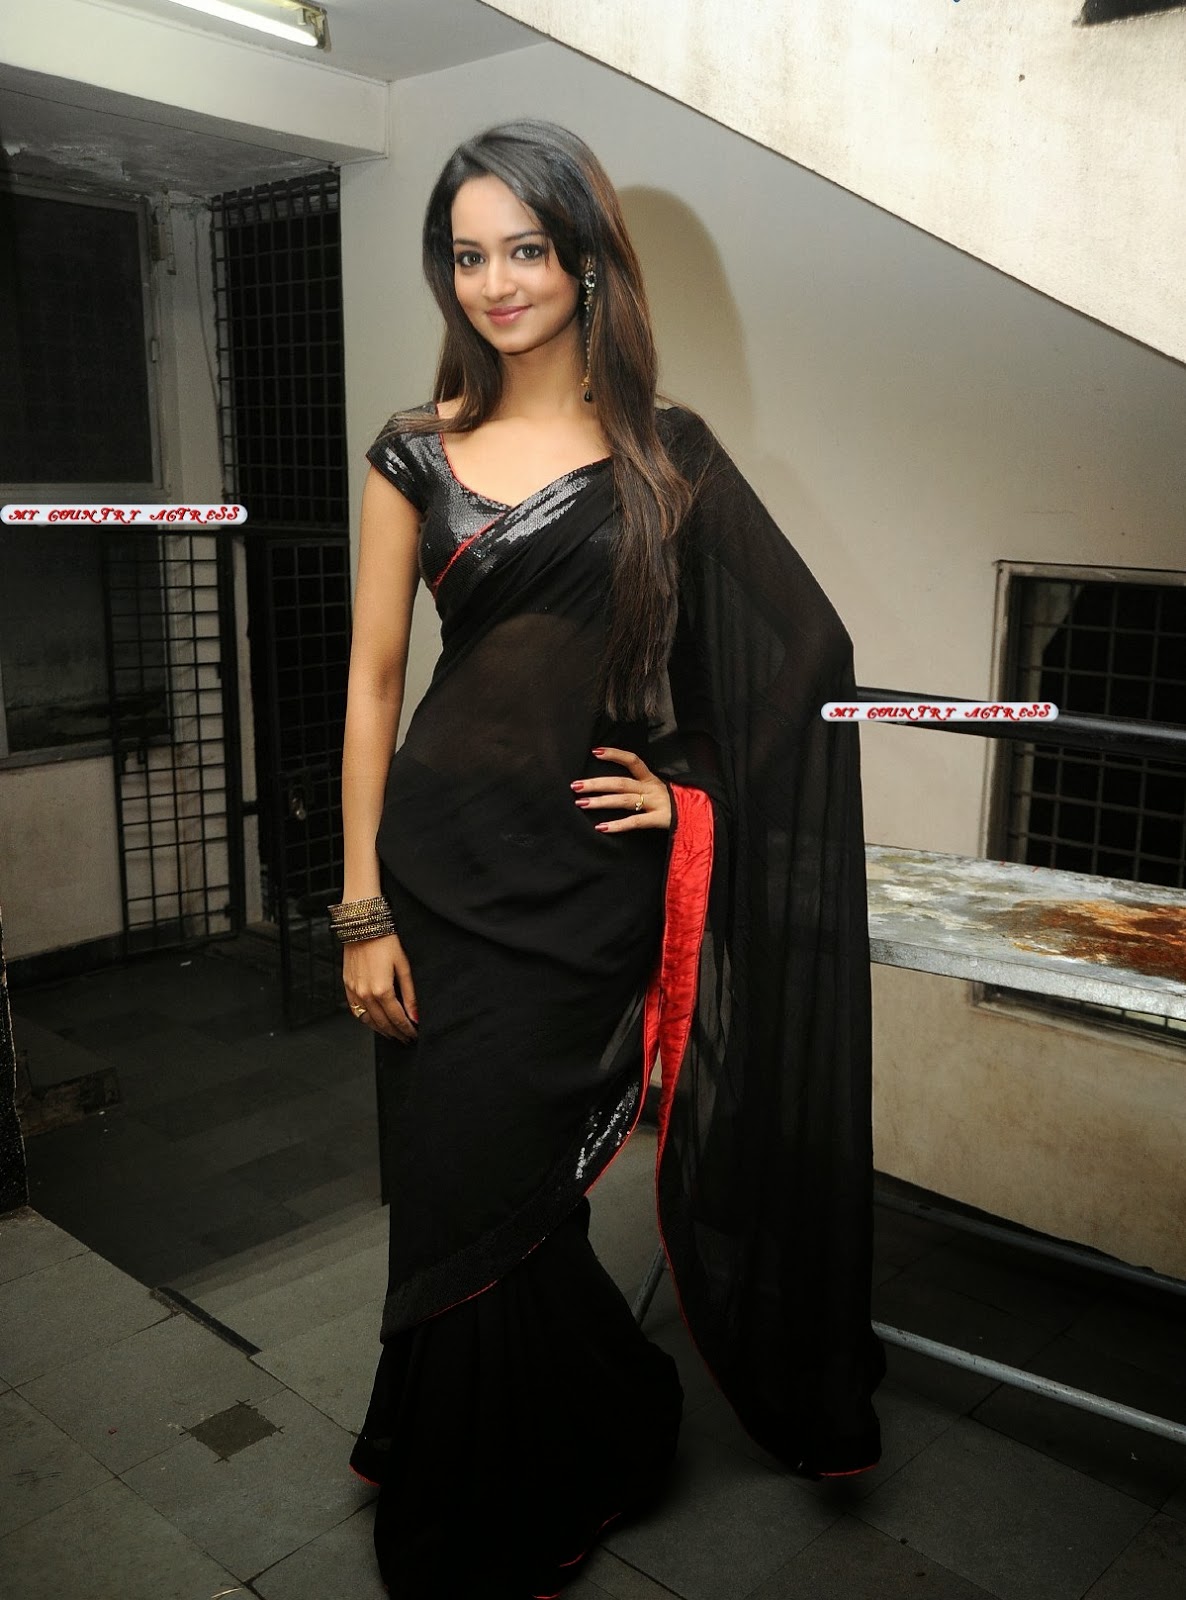 My Country Actress Shanvi Srivastava Hot In Black Saree Photos